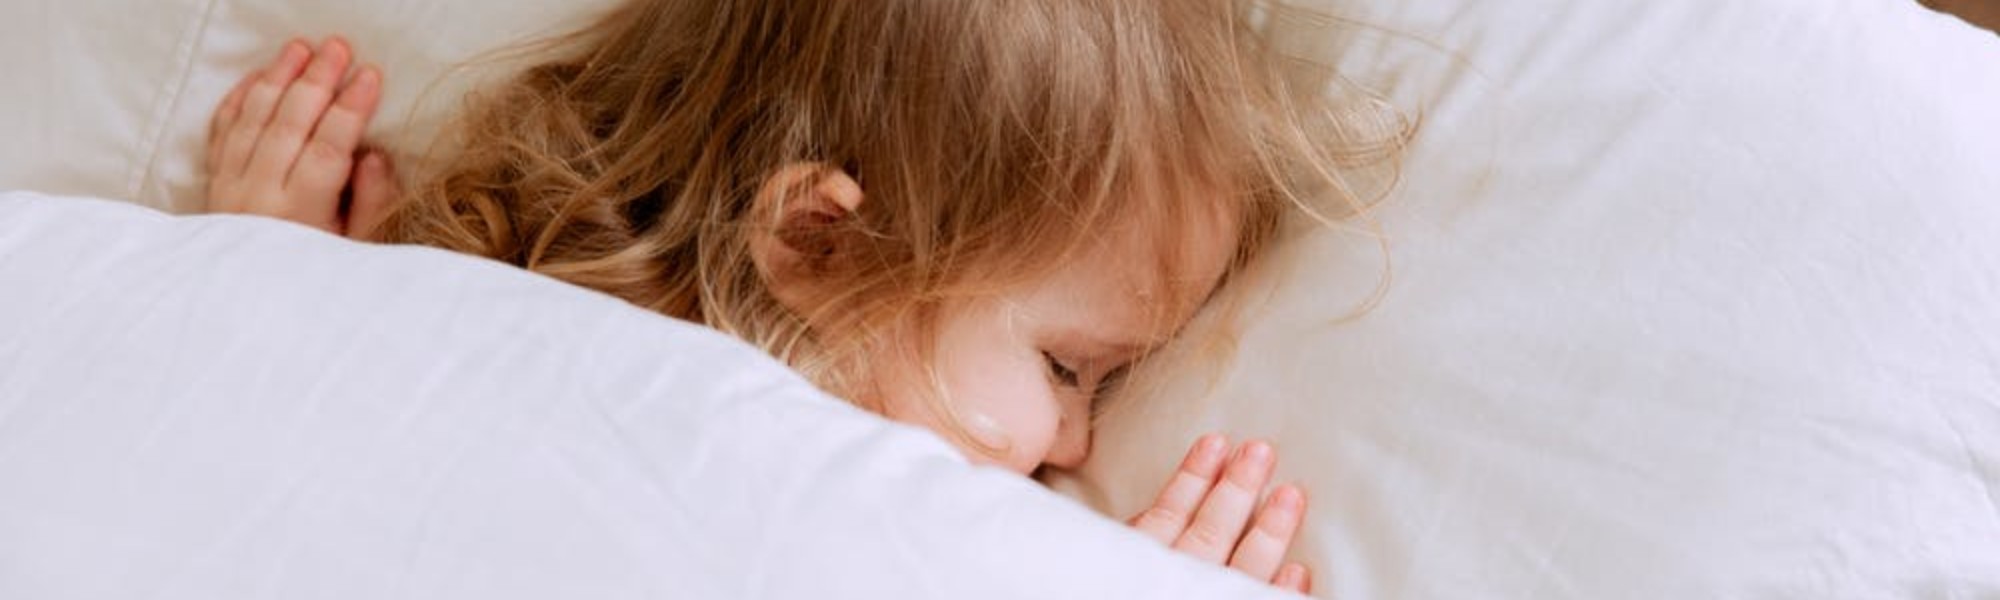 Kuvassa näkyy peiton alla nukkuvan lapsen pää tyynyllä.